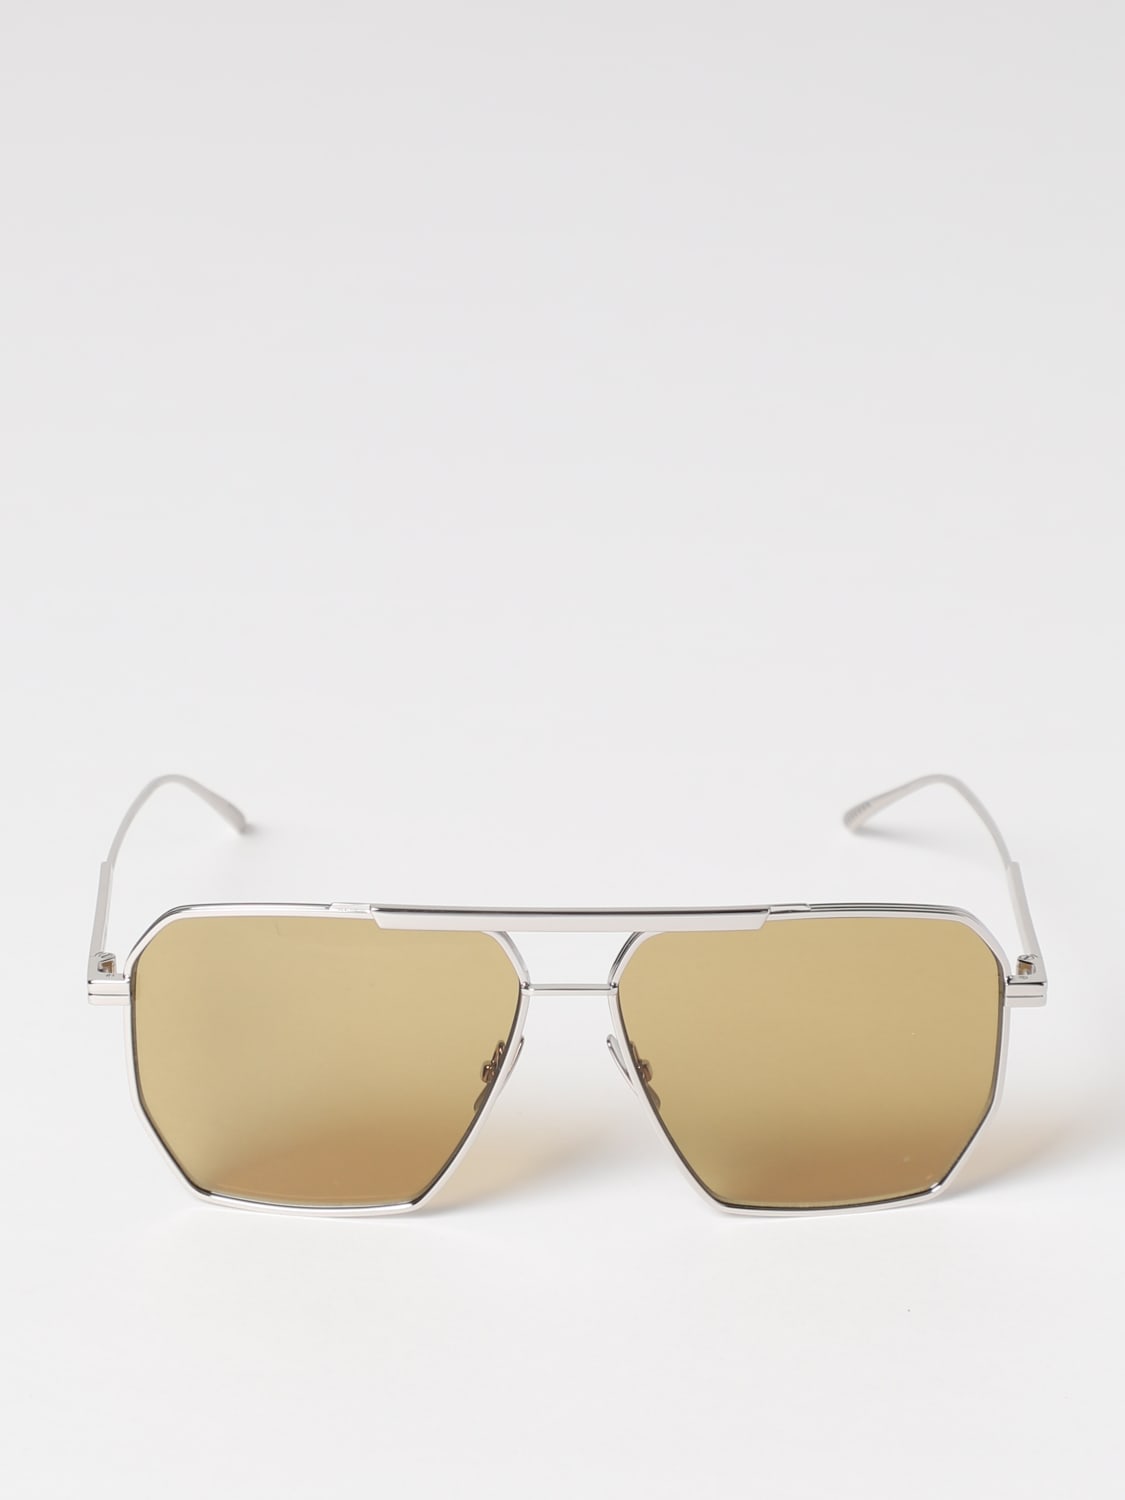 Brown Aviator metal sunglasses, Bottega Veneta